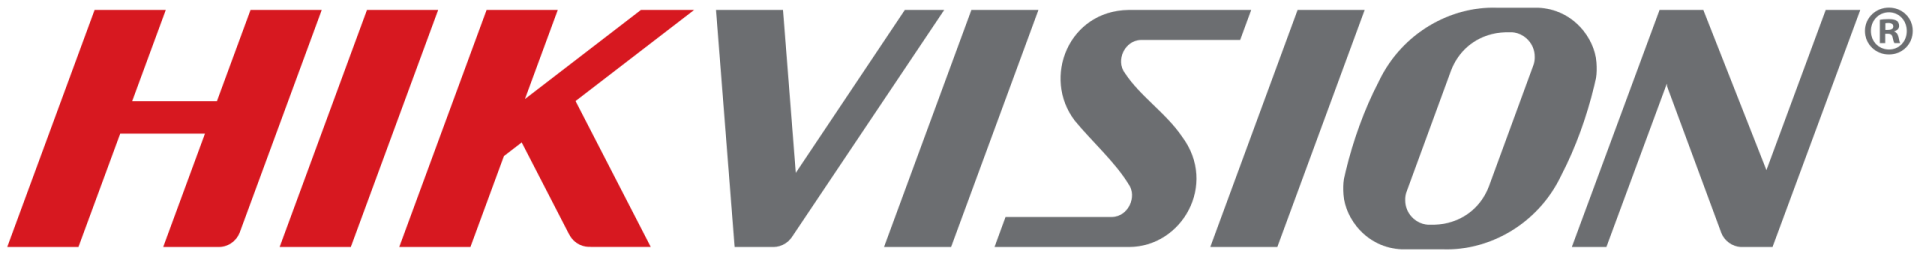 2560px Hikvision logo.svg